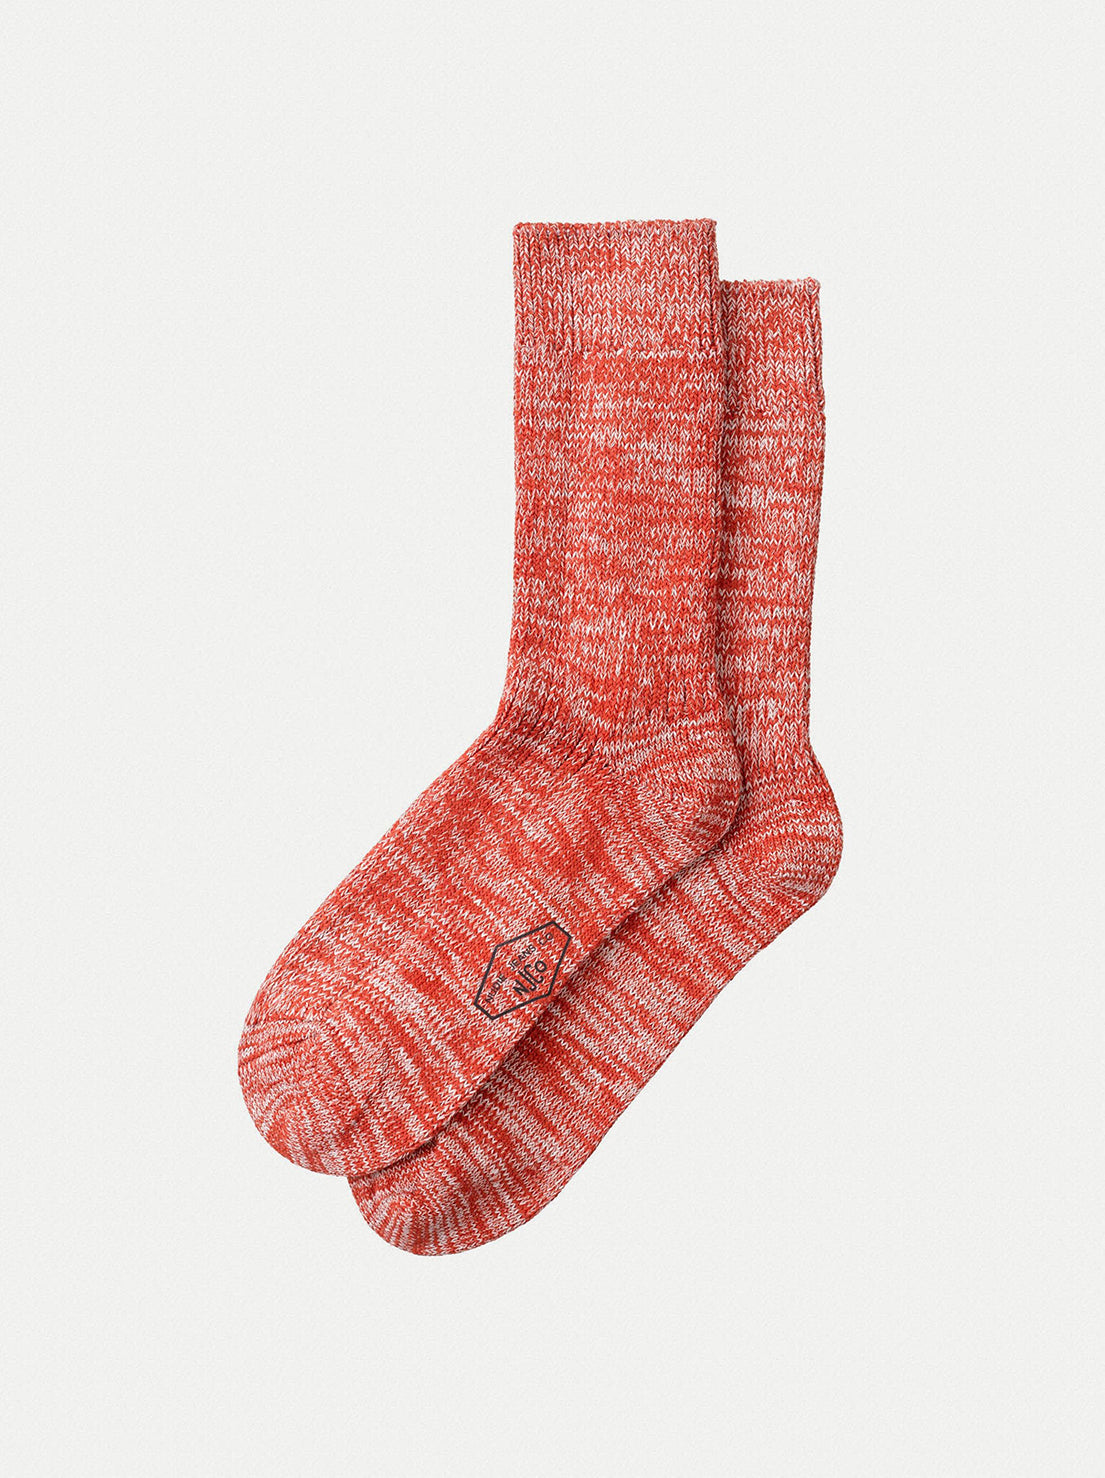 Nudie - Mens Chunky Socks - Red Melange